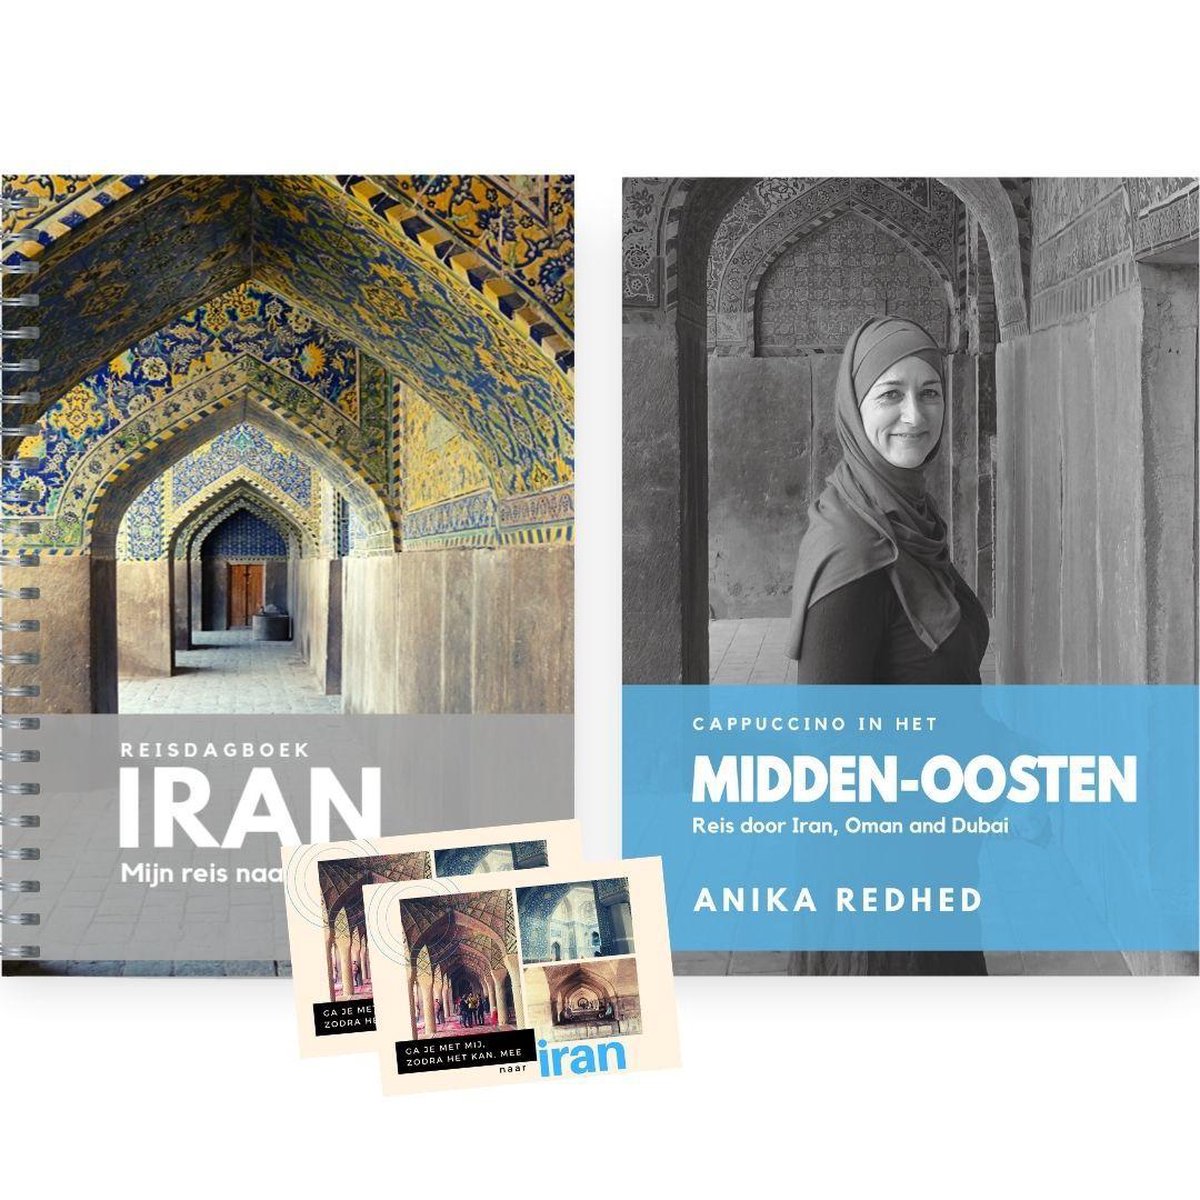 Iran - cadeau pakket reisset : Reisverhaal Iran en Reisdagboek Iran - vakantiepakket